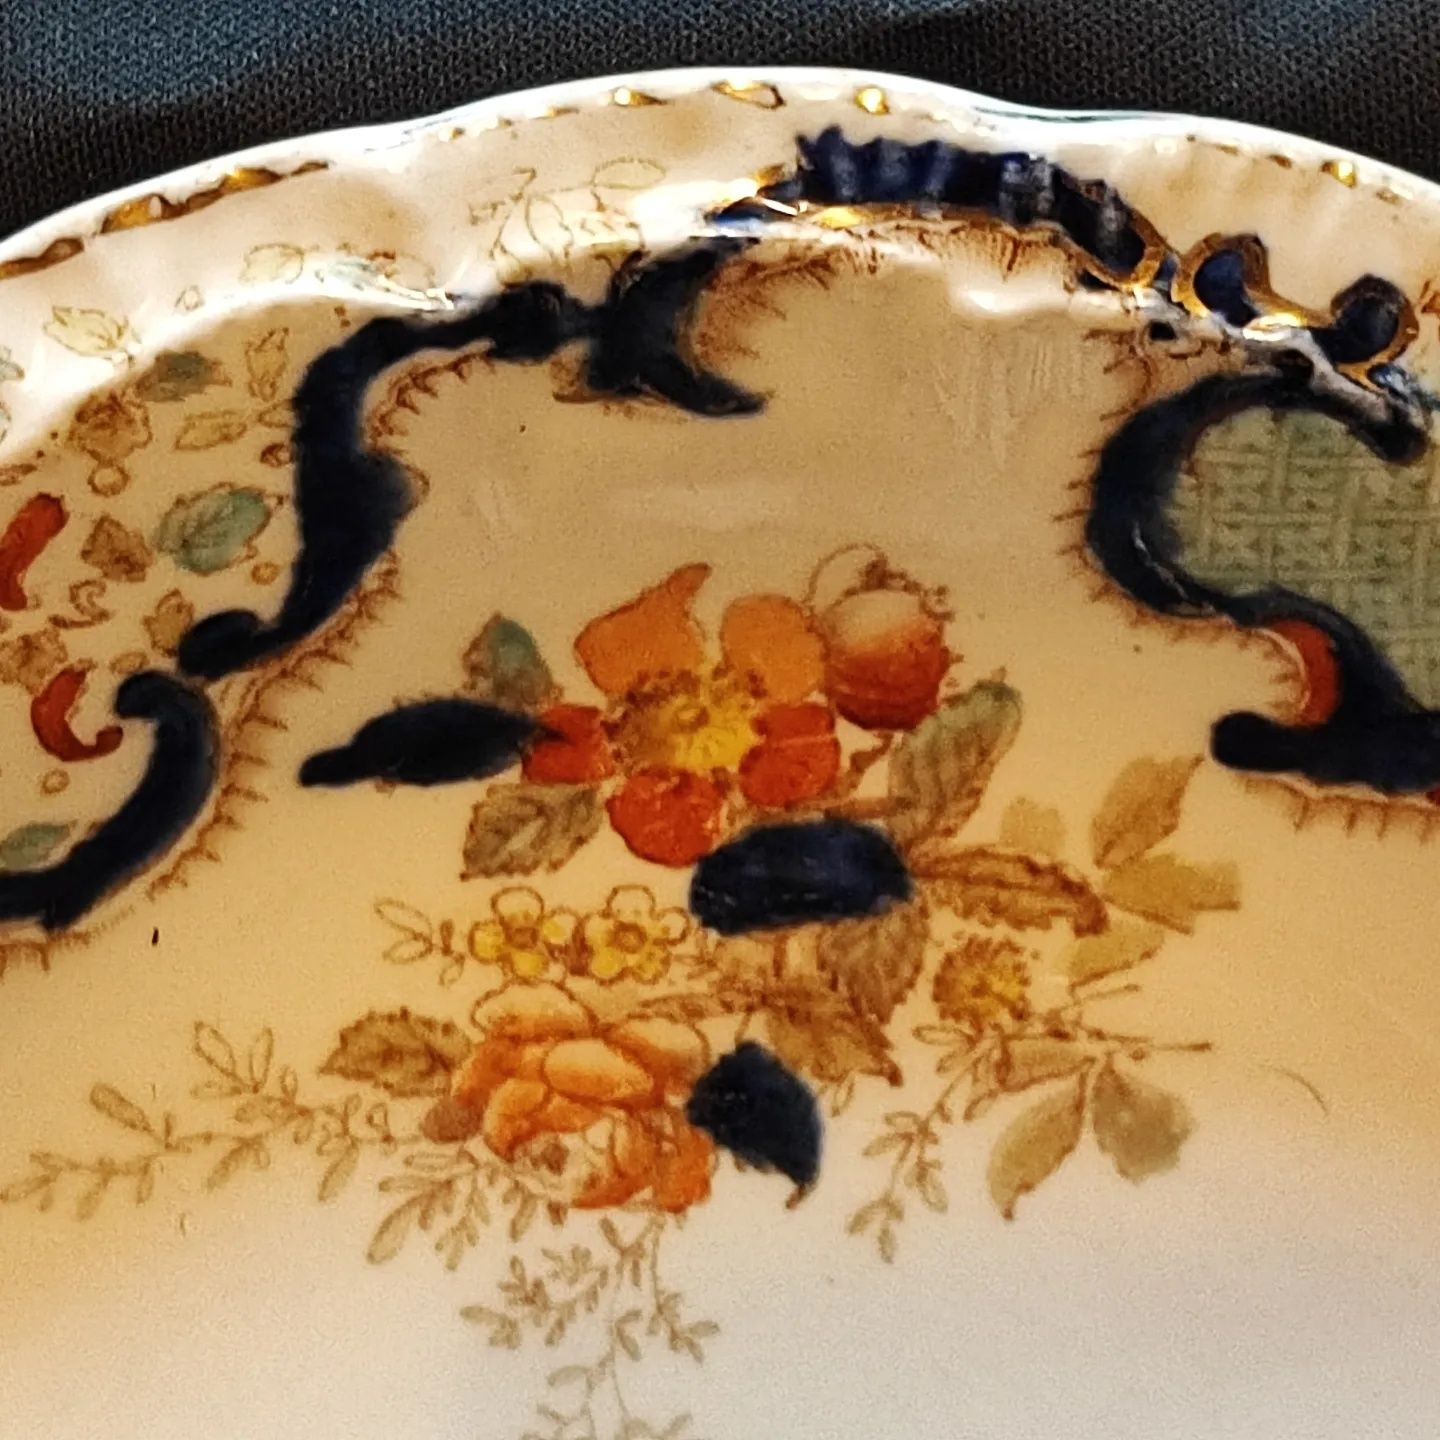 Старинное блюдо Ridgways Royal Semi Porcelain